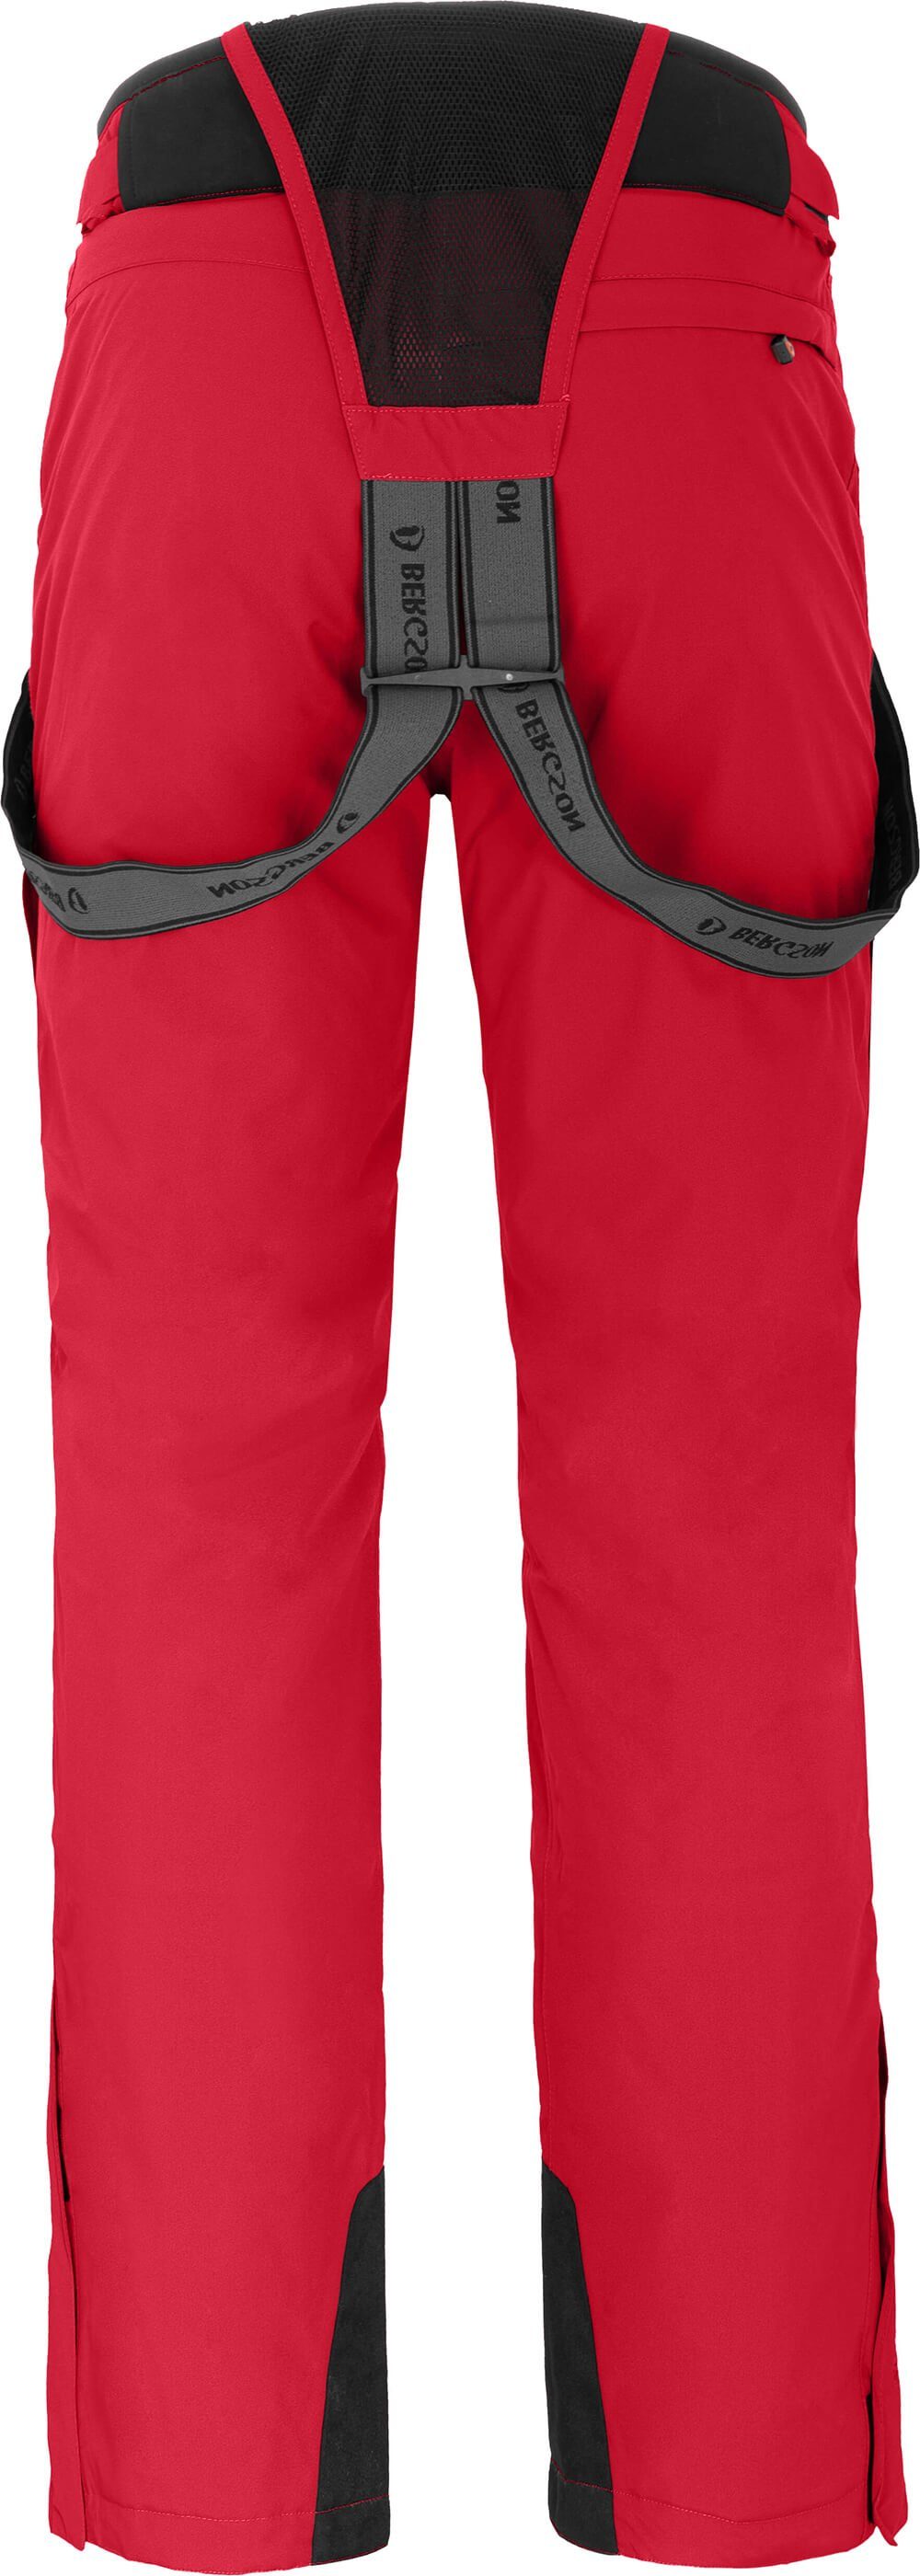 Bergson Skihose Normalgrößen, rot FLEX 20000mm Herren light Wassersäule, unwattiert, Skihose, China